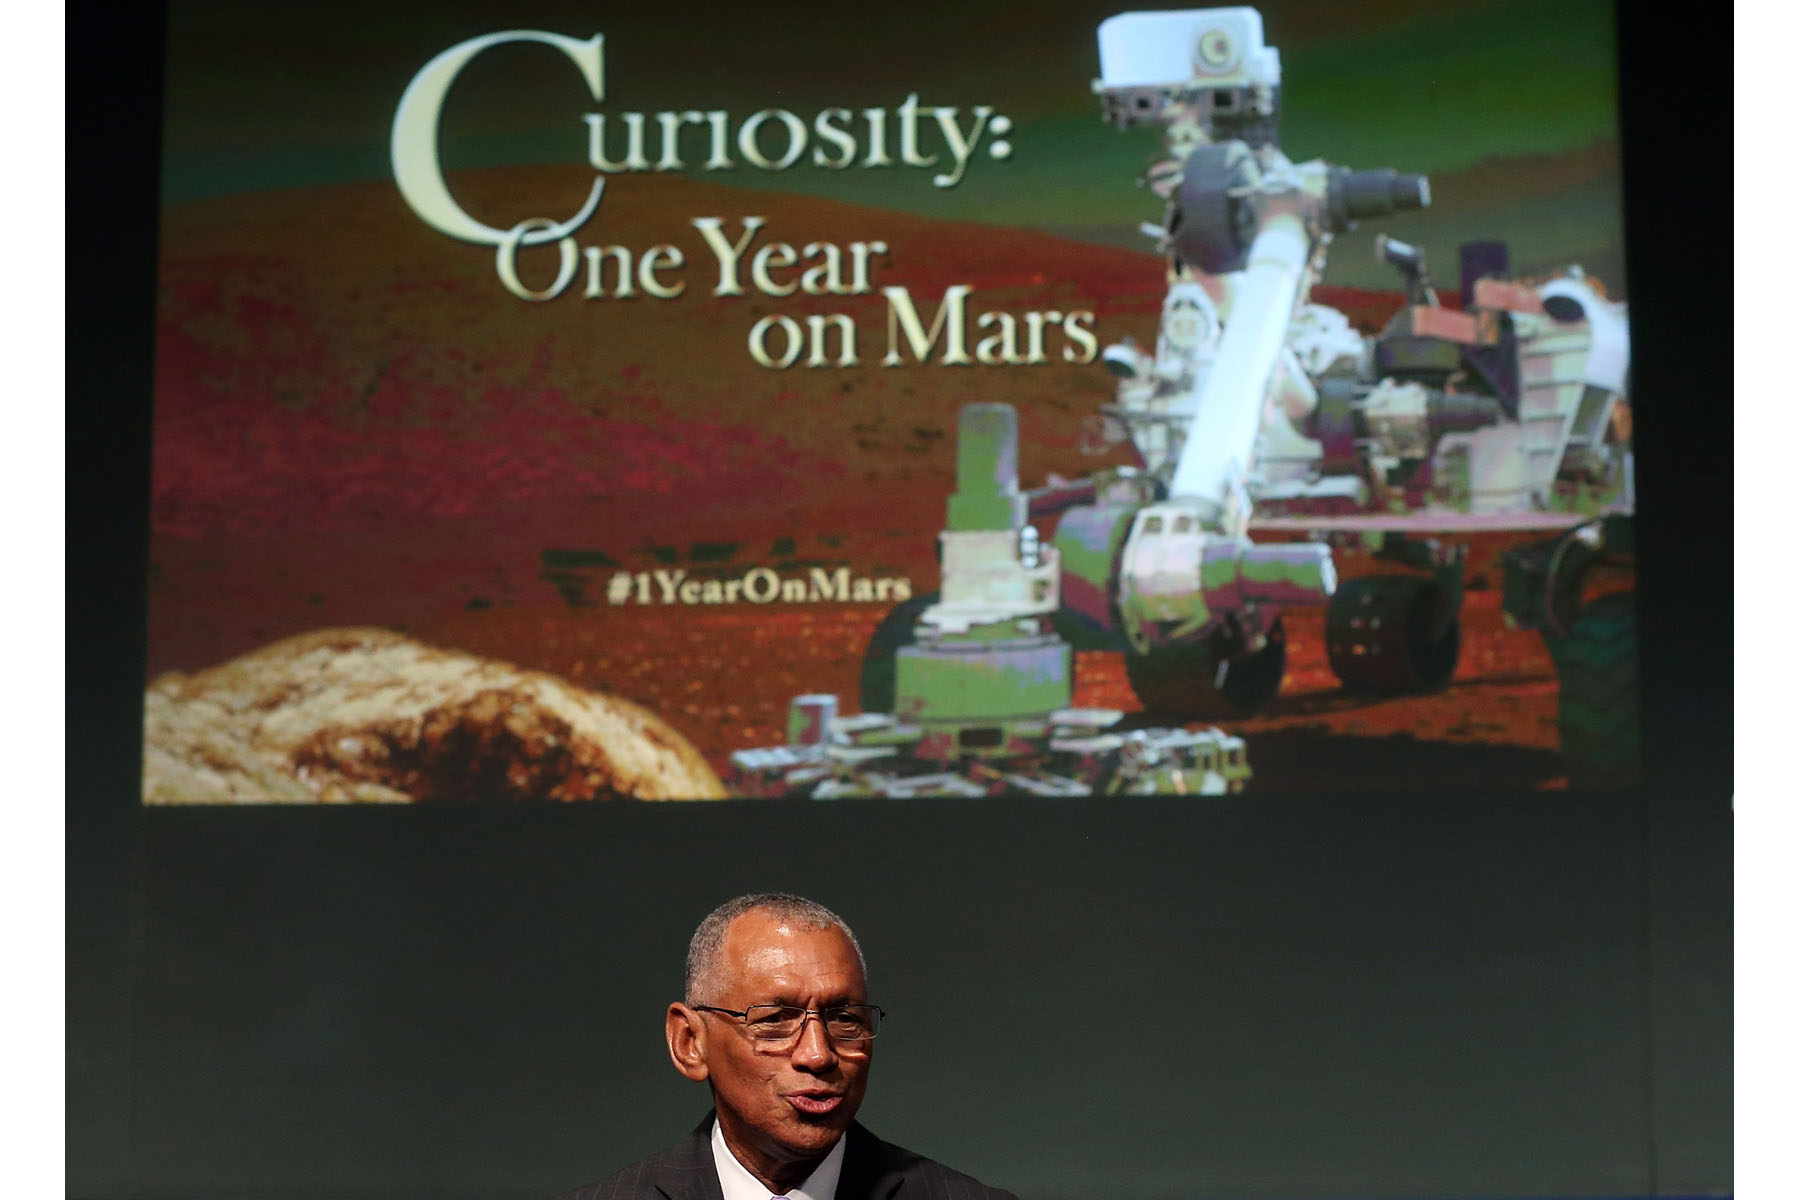 Estados Unidos. La nave-robot 'Curiosity' cumplió ayer su primer año en Marte, de donde ha enviado u